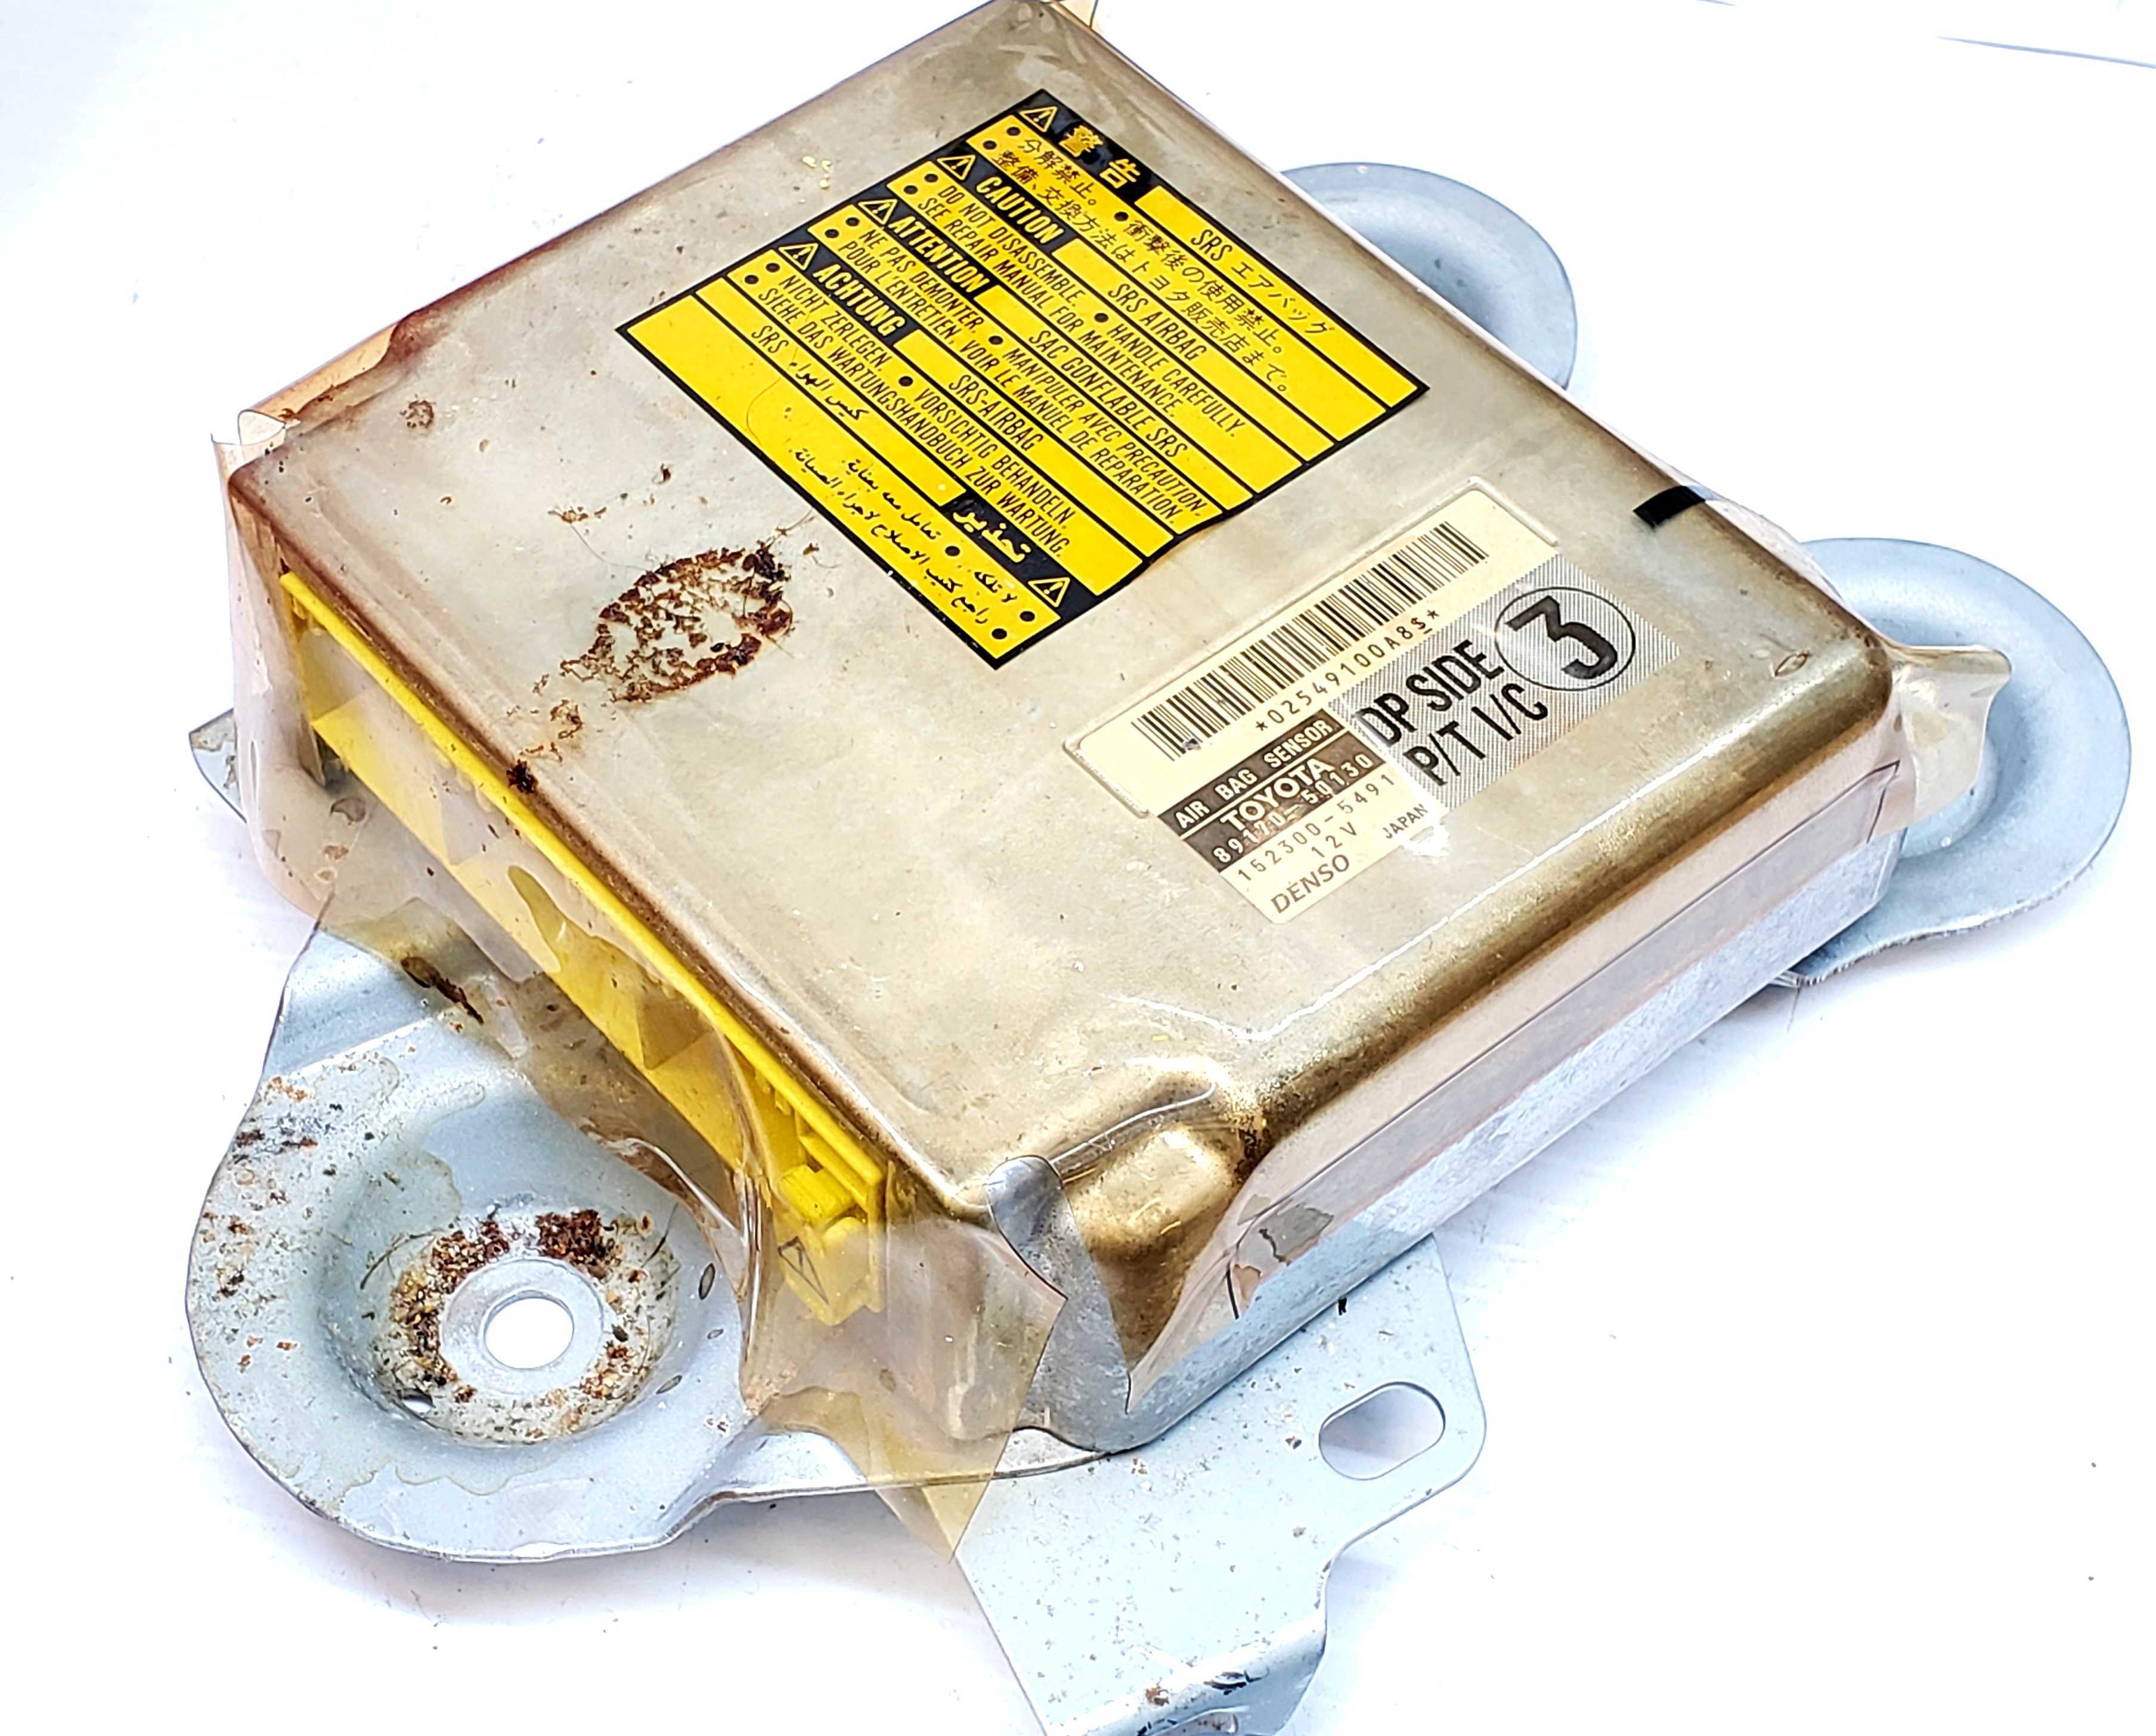 LEXUS LS430 SRS Airbag Computer Diagnostic Control Module PART #8917050130